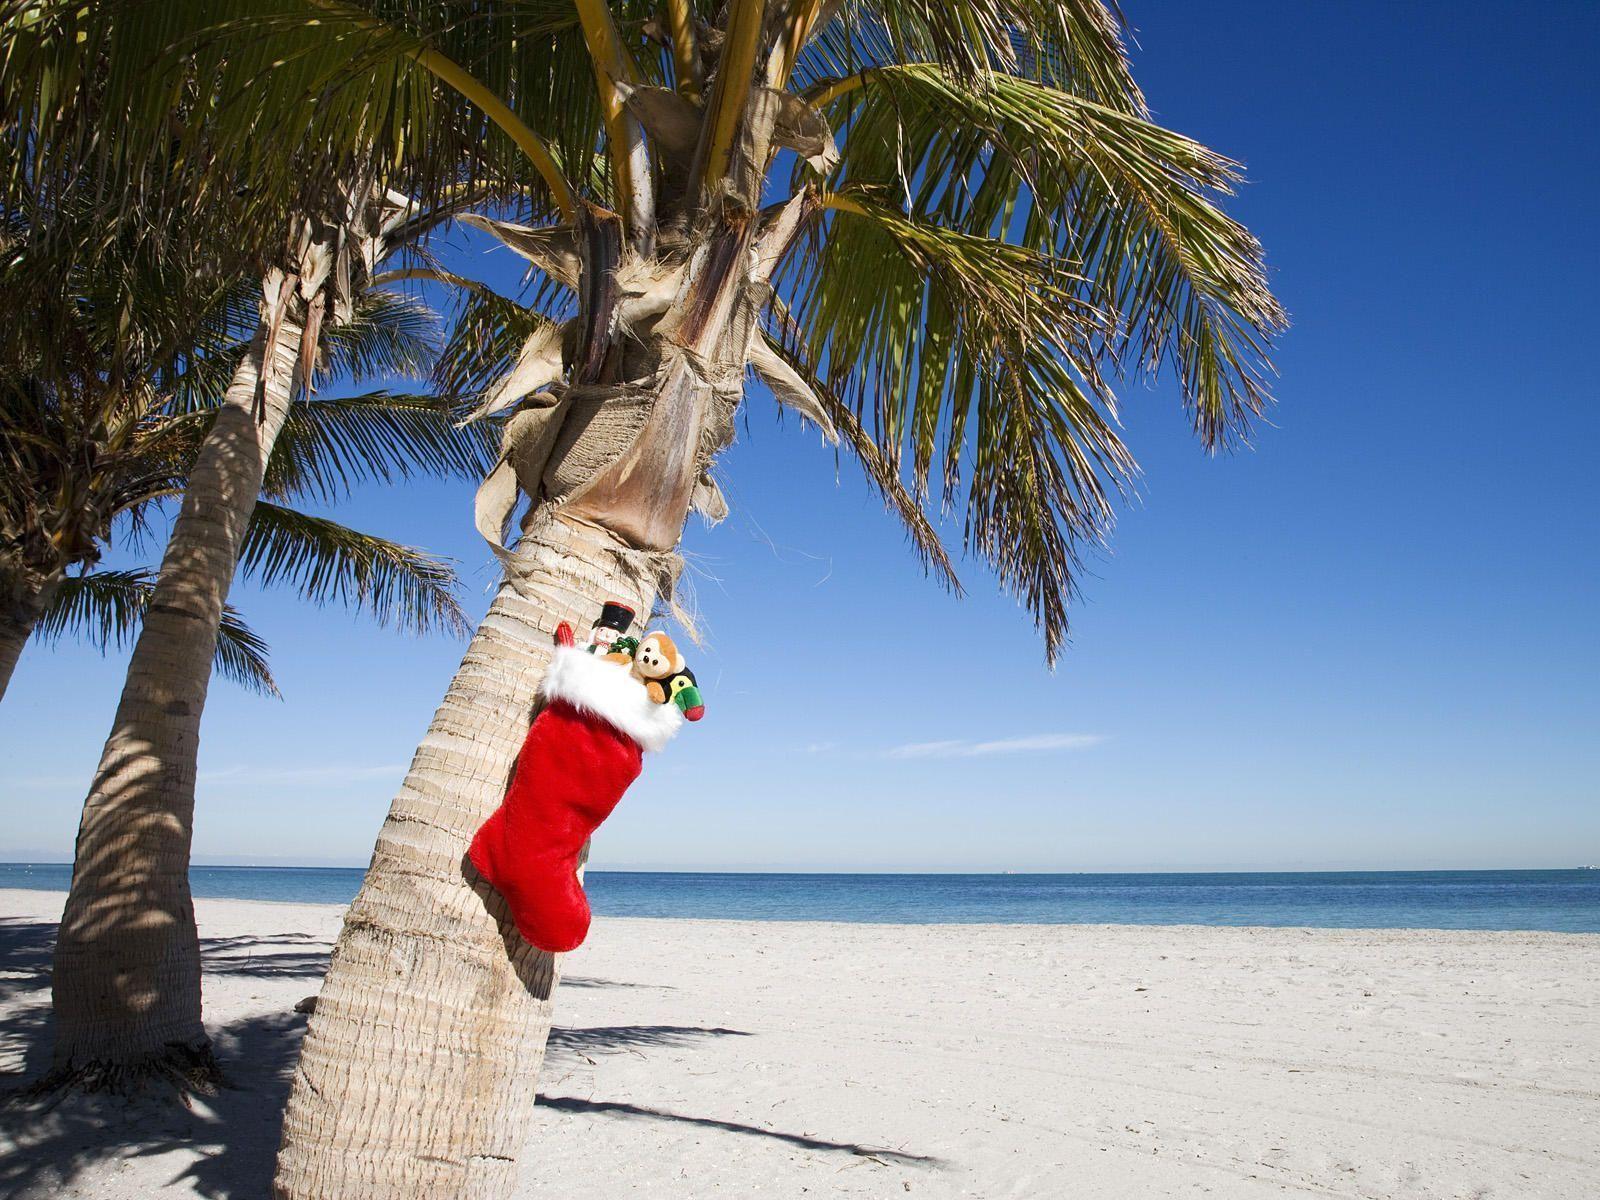 Hình nền giáng sinh nhiệt đới là lựa chọn hoàn hảo cho những người muốn tận hưởng không khí Giáng sinh ấm áp và hoà mình vào thiên nhiên đầy màu sắc. Những hình ảnh biển, cát và cây cối kết hợp với những trang trí Noel đầy màu sắc sẽ khiến bạn cảm nhận được không khí Giáng sinh đặc biệt. Hãy tải hình nền giáng sinh nhiệt đới để tận hưởng không khí Noel độc đáo này nhé!